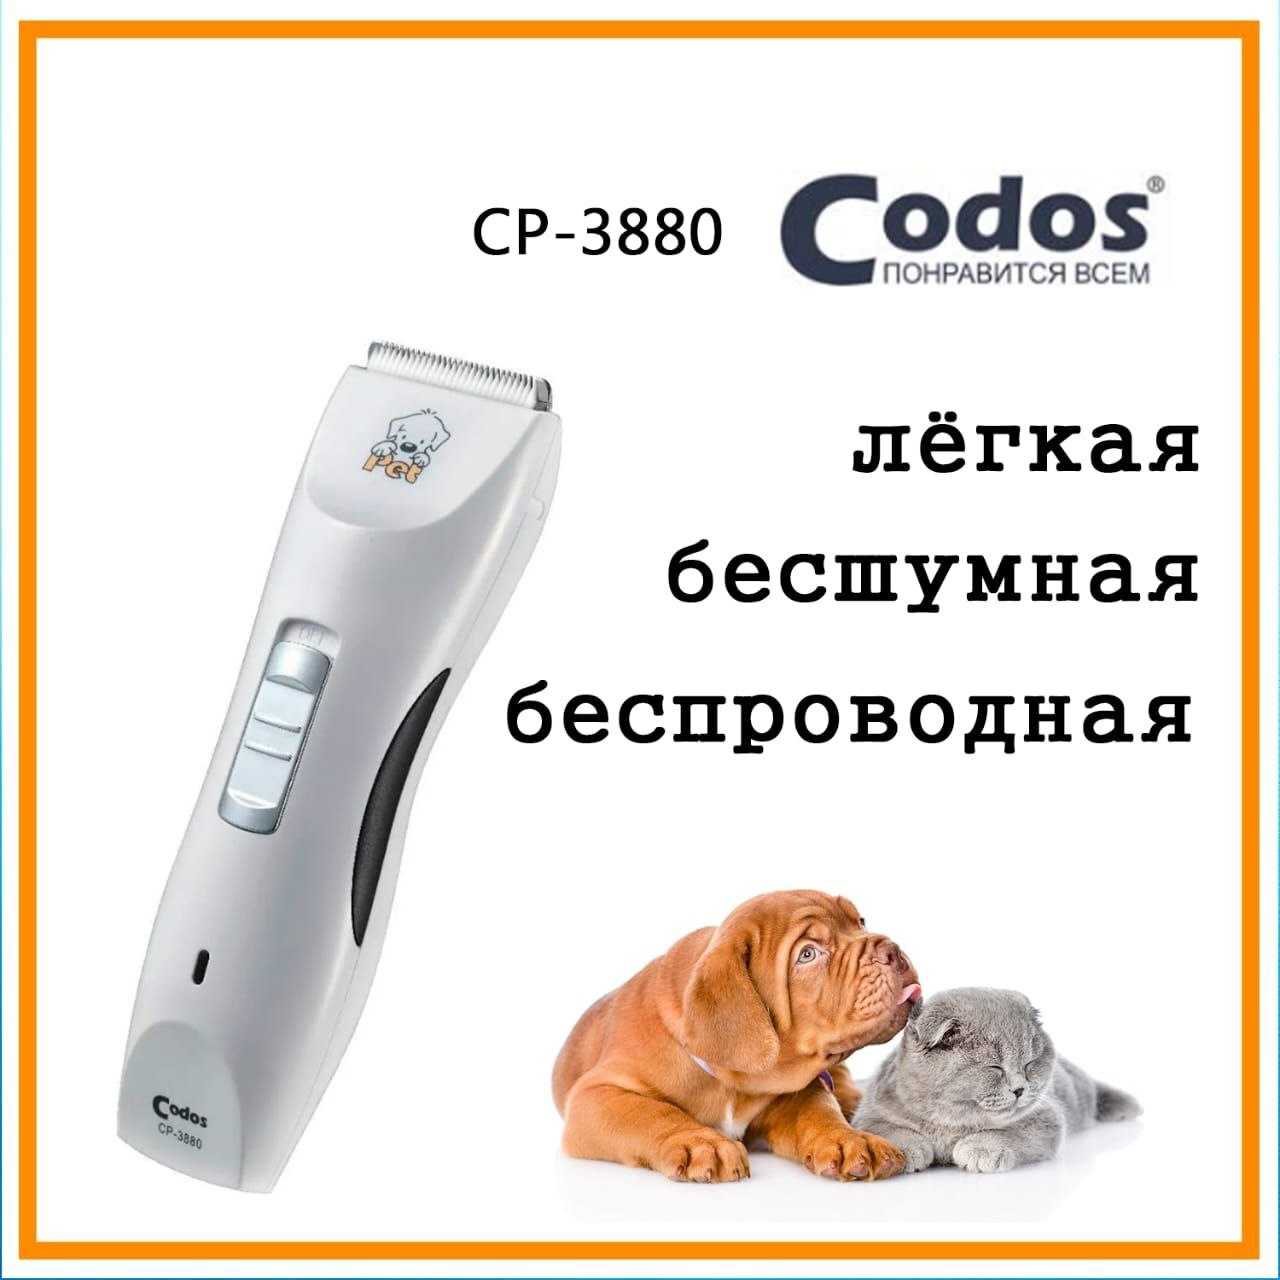 Машинка для стрижки животных codos ср-3880